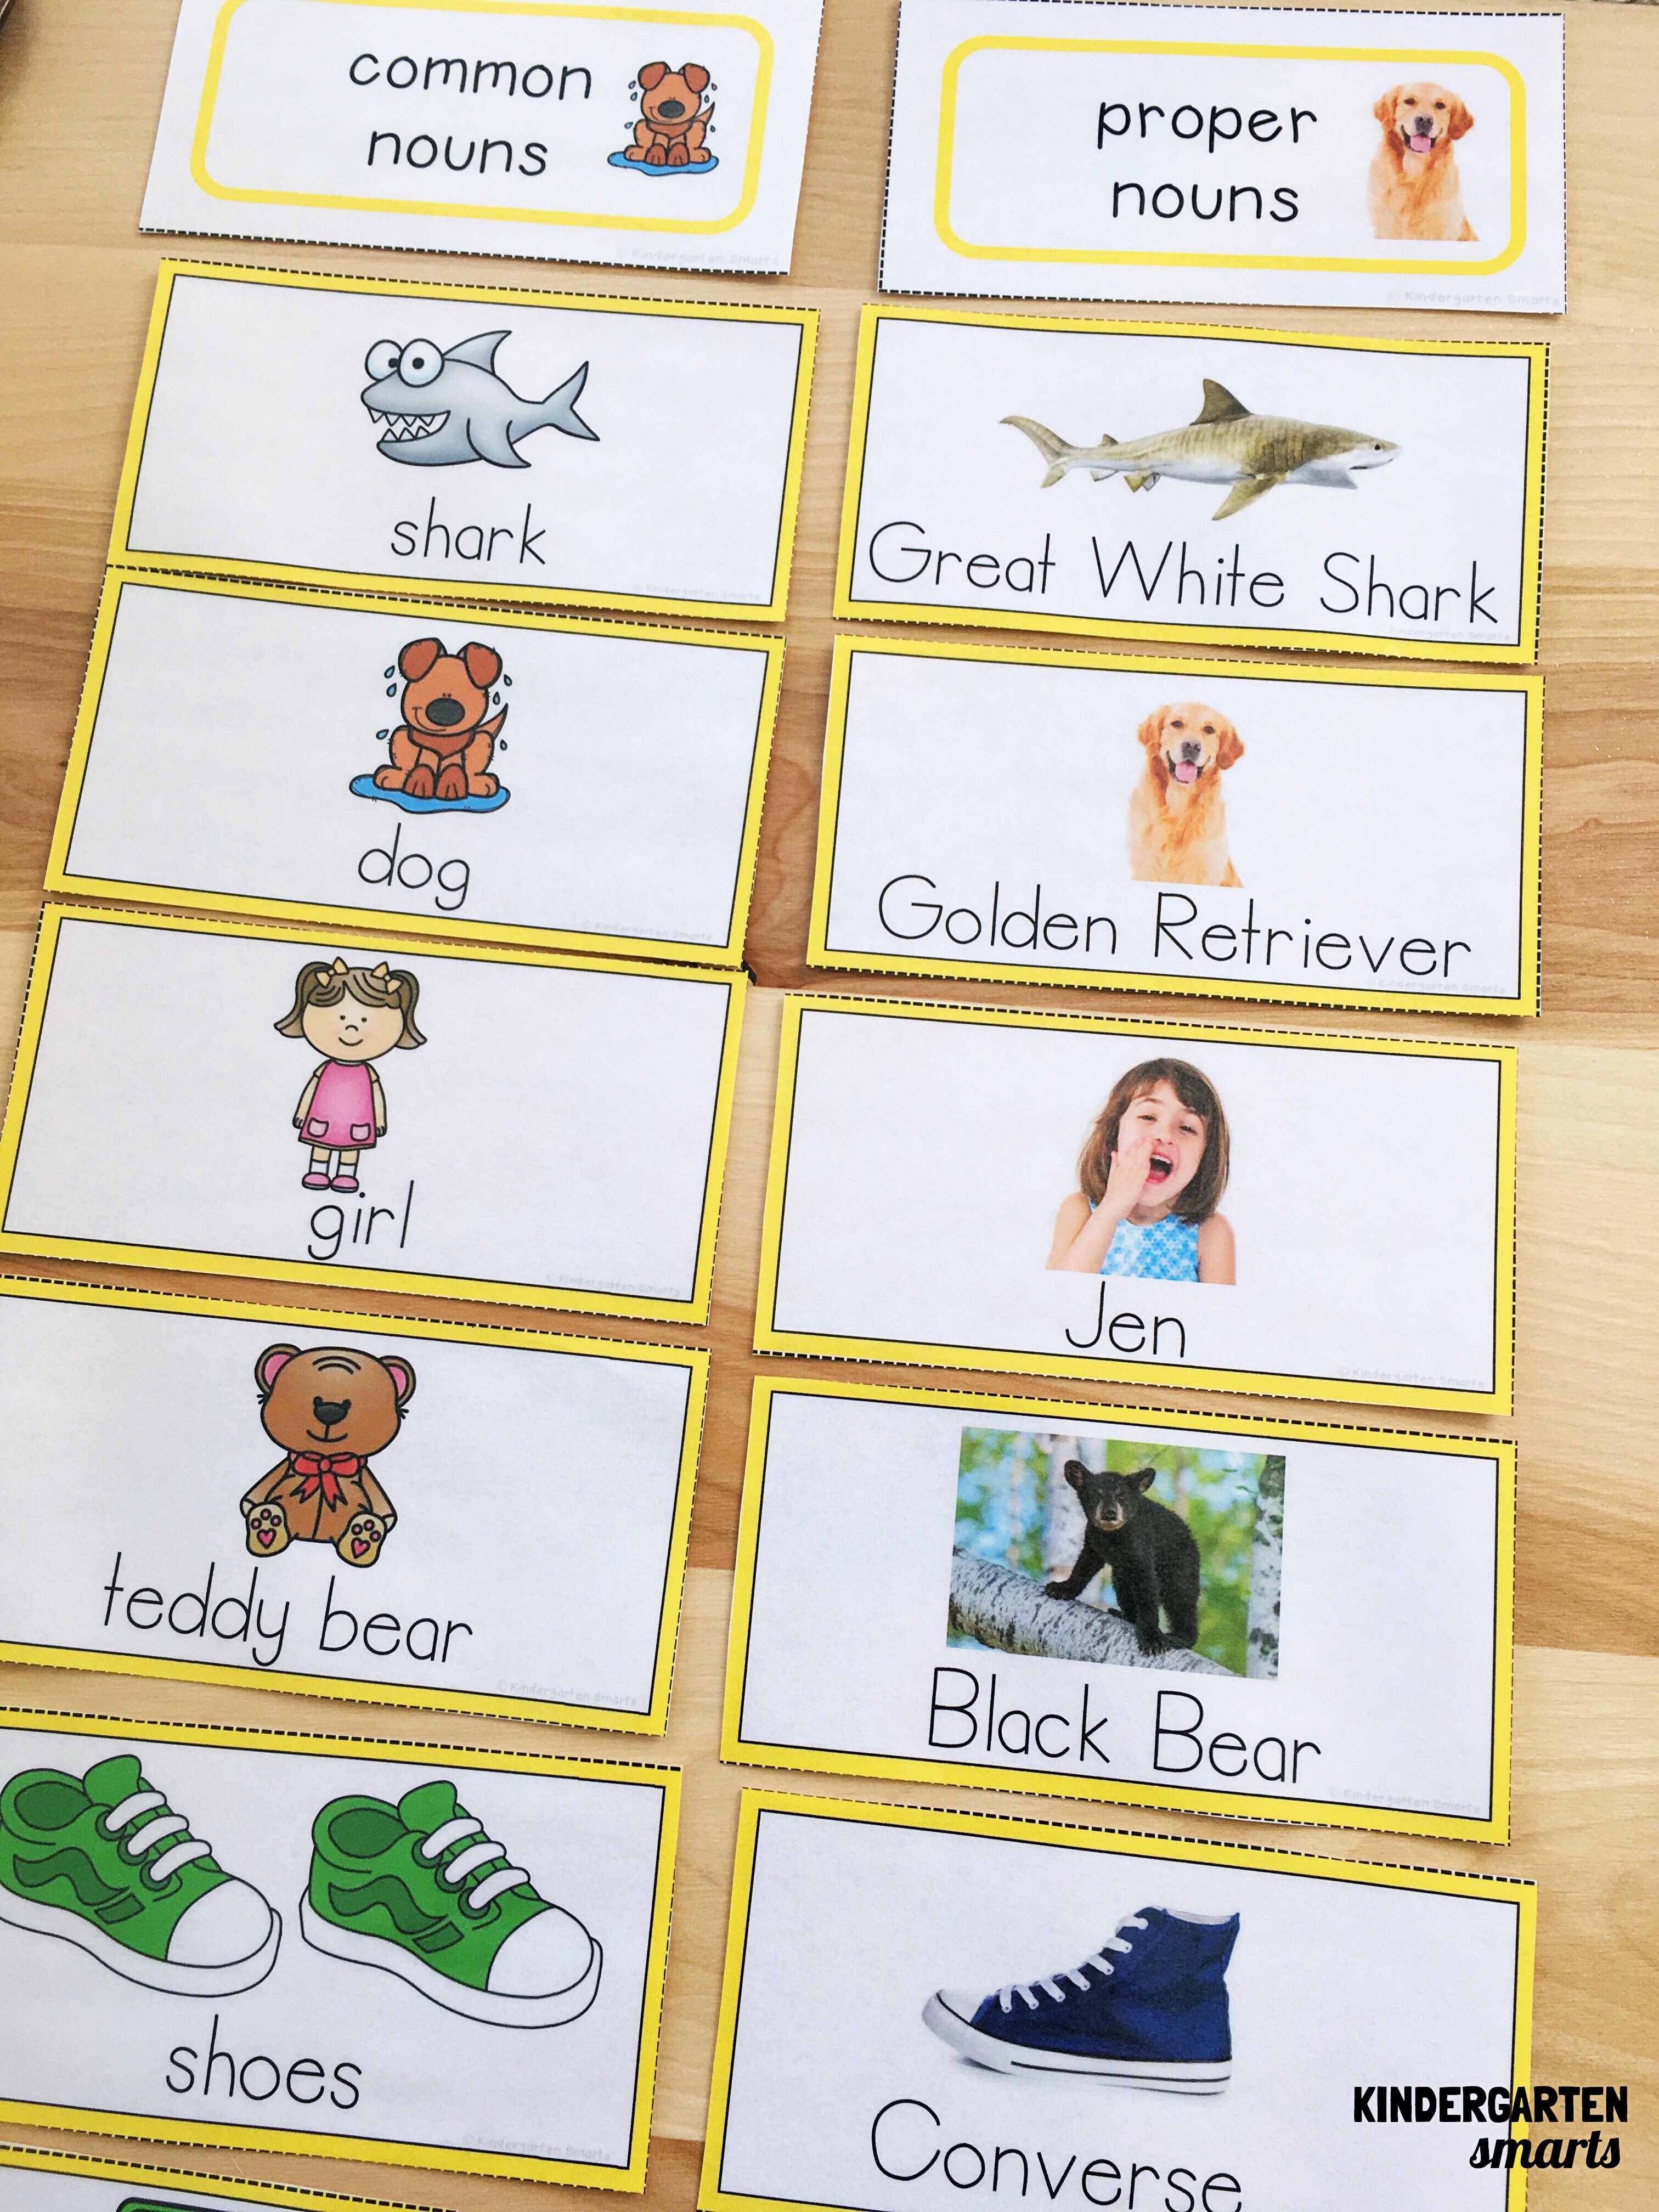 common-proper-nouns-kindergarten-smarts